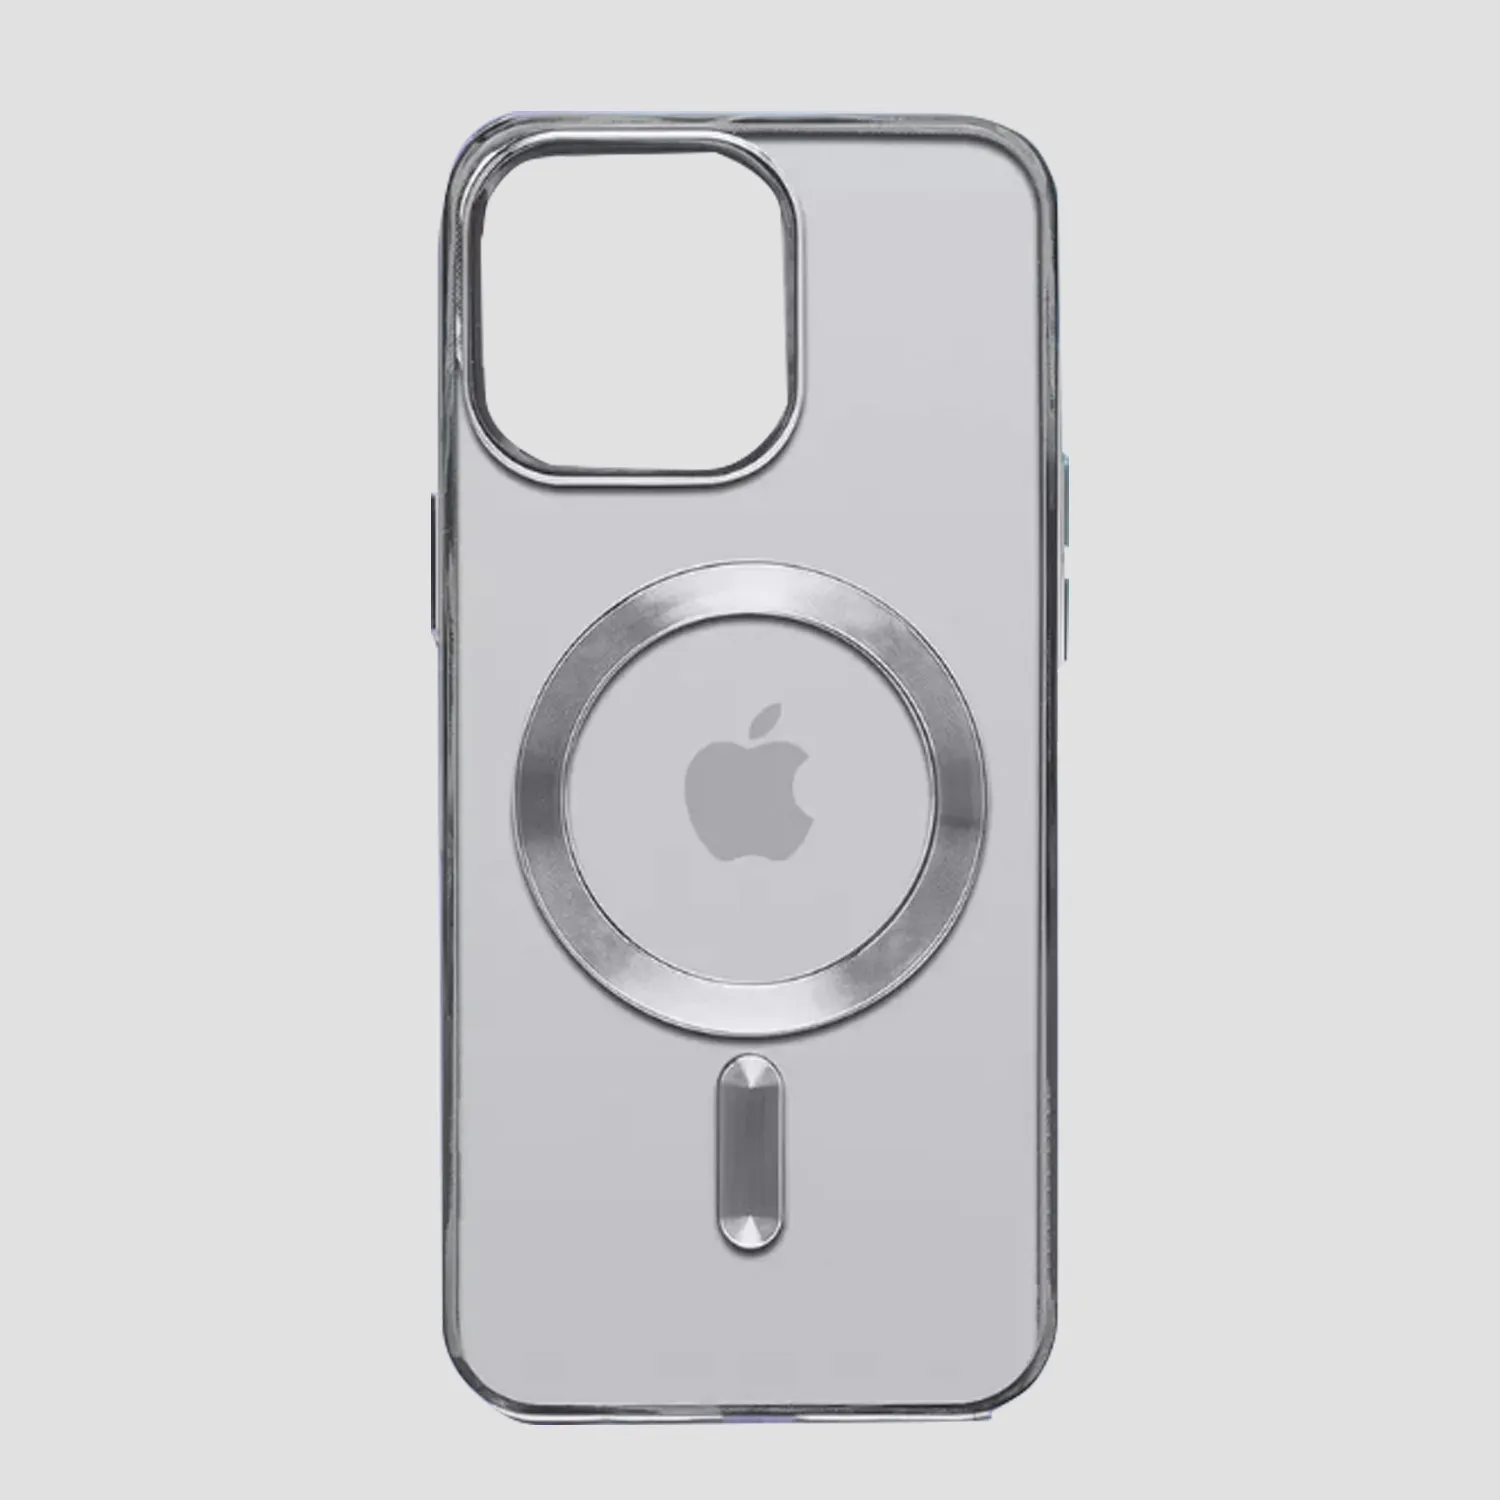 Чехол прозрачный силиконовый для Apple iPhone 14 Pro с MagSafe (серебристый)